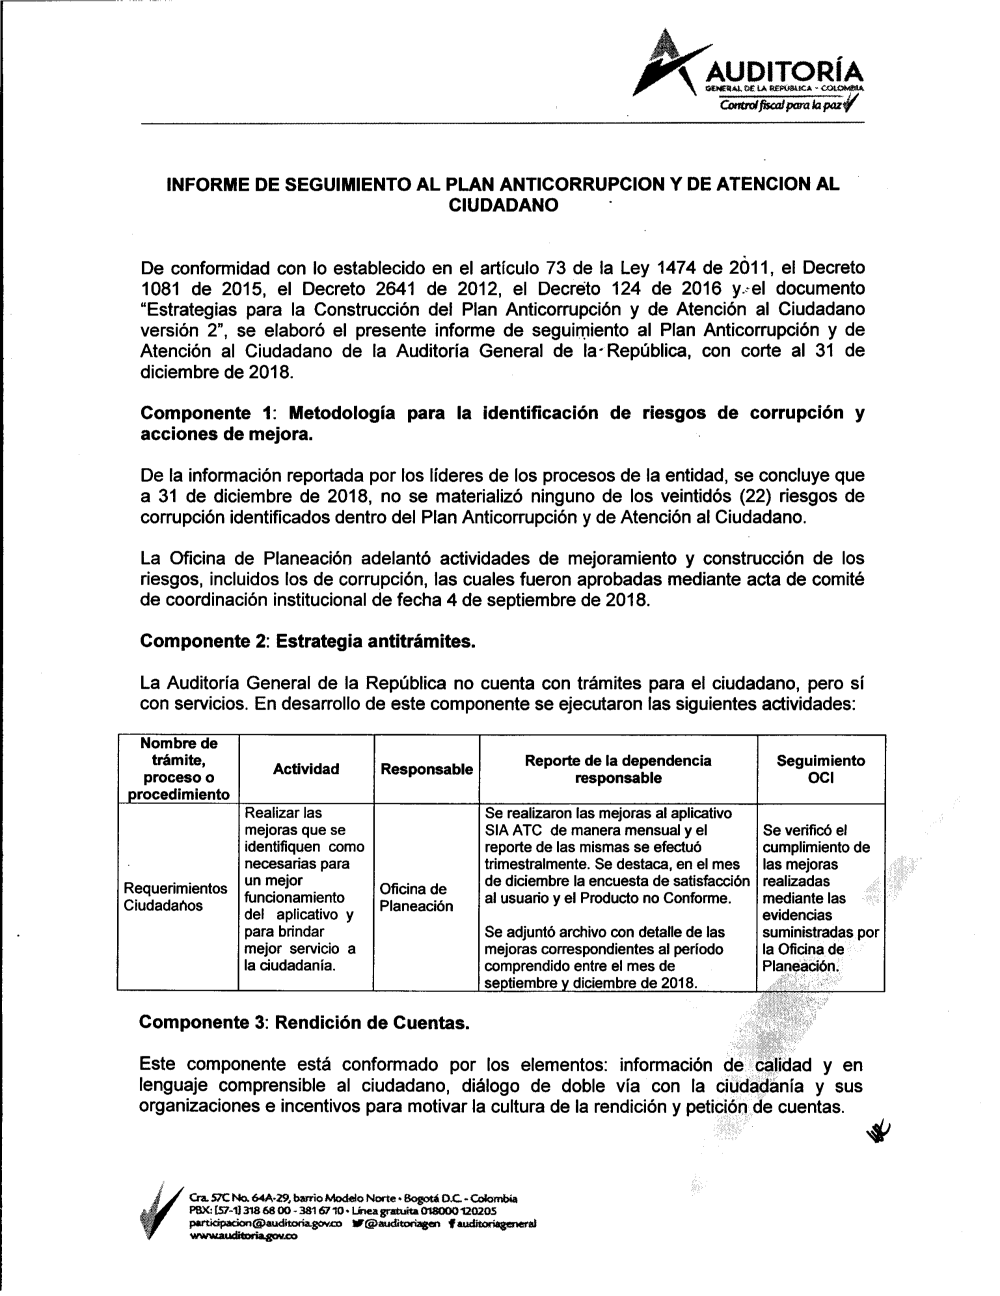 Informe de evaluación del control interno contable - Auditoria General de  la República